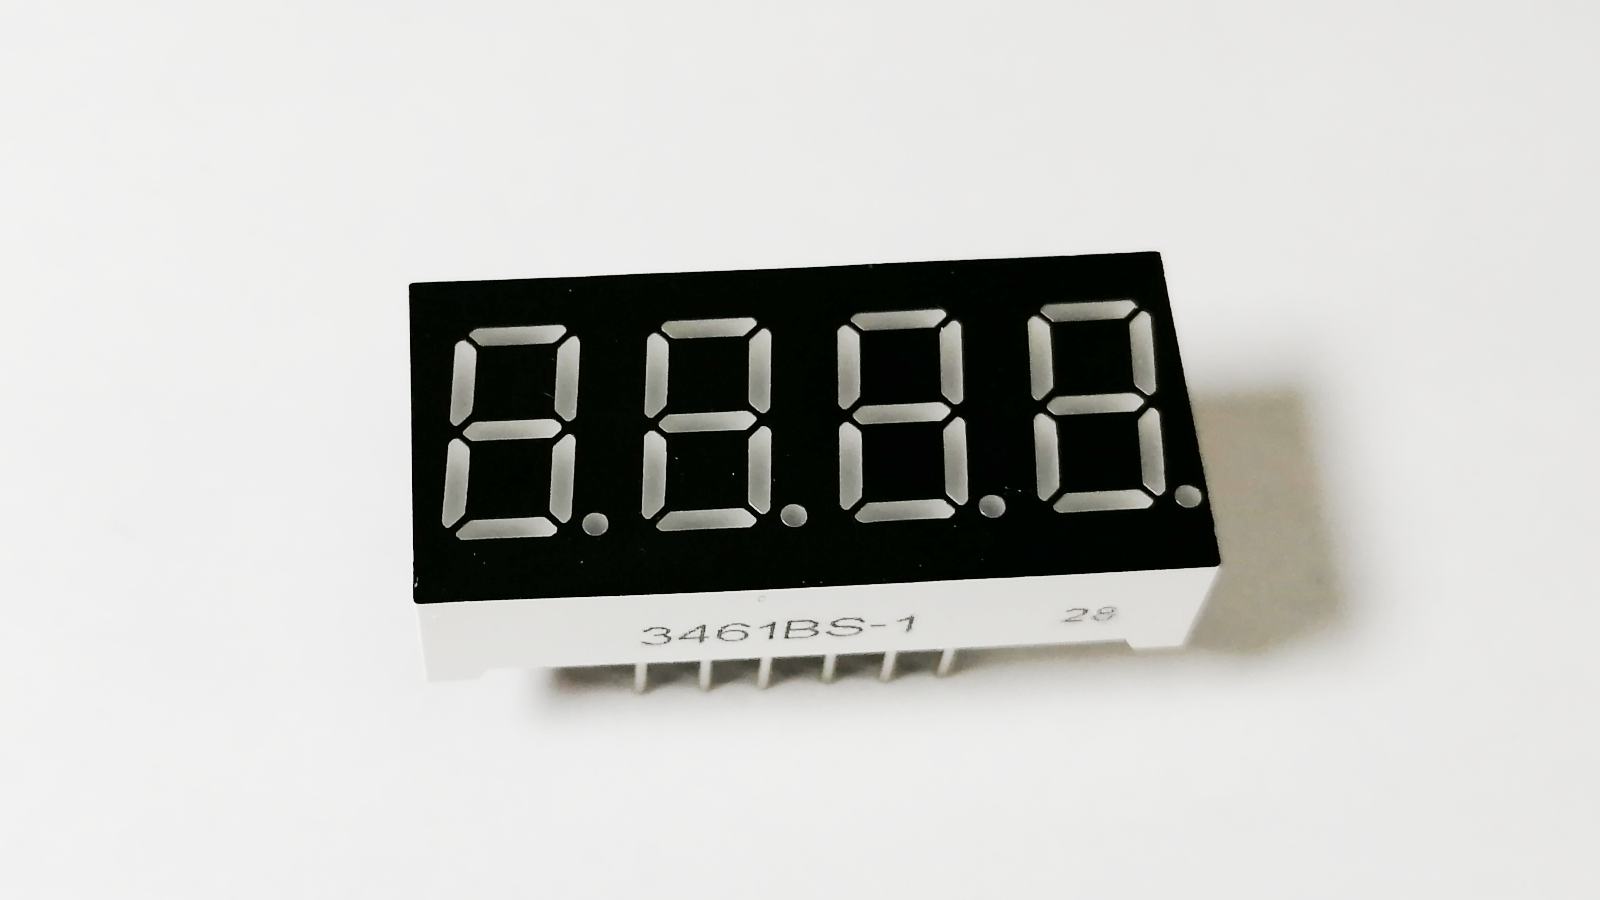 4桁の7セグLEDをダイナミック点灯させてデジタル時計を自作 | e-DIY